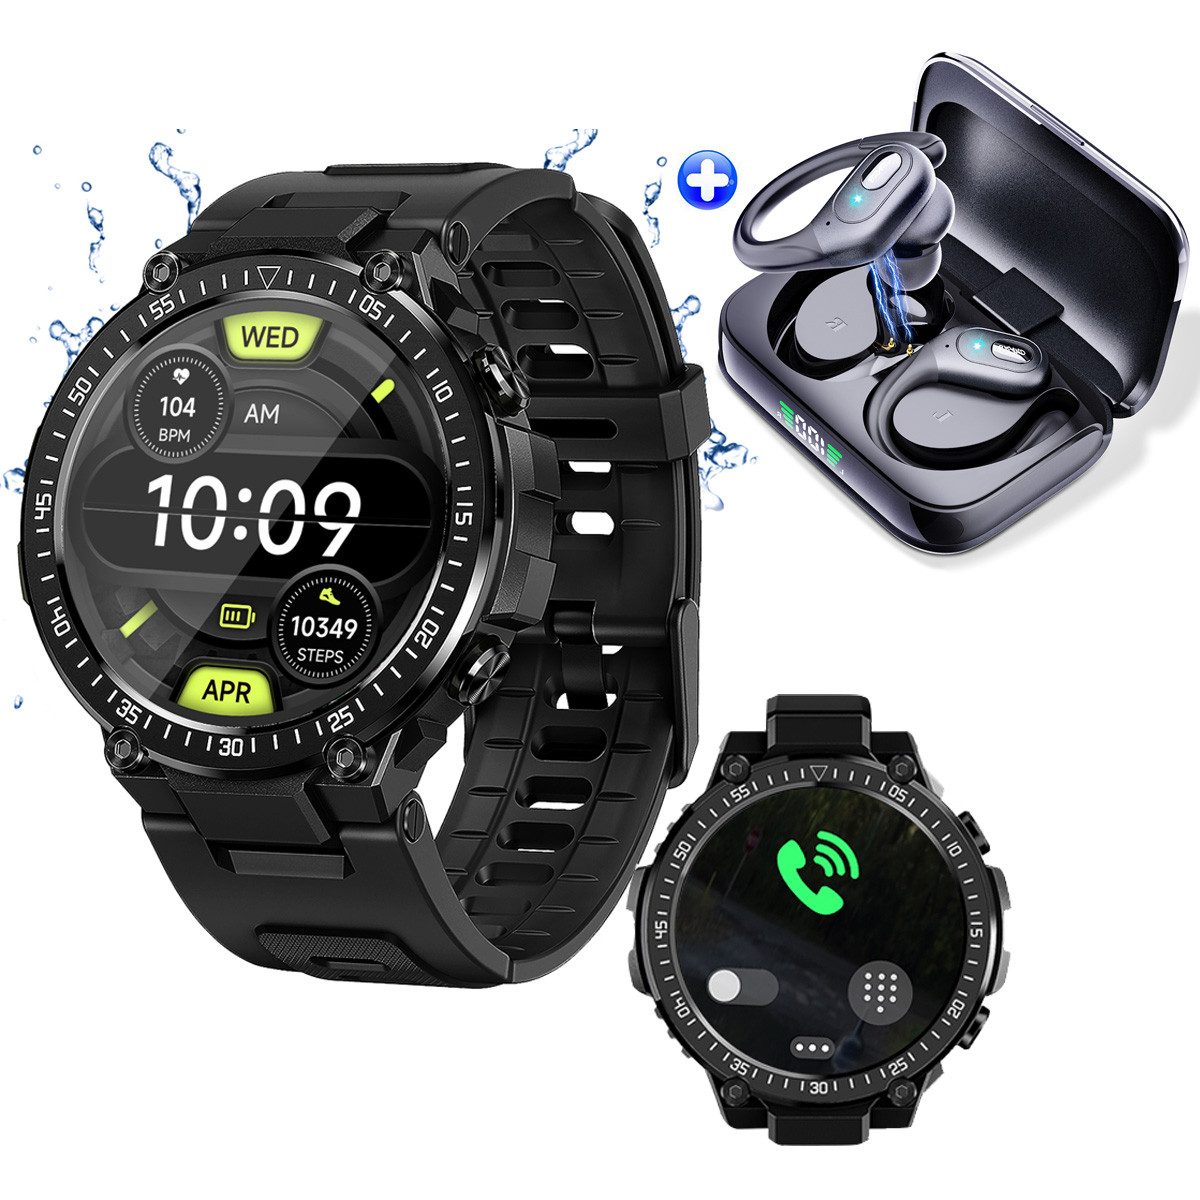 HYIEAR Fitness-Tracker-Uhr für Damen und Herren & Bluetooth 5.3 Kopfhörer Smartwatch, Smartwatch mit Gesundheitsmessung & Info-Benachrichtigung und mehr, IPX5 wasserdichte In-Ear-Kopfhörer (LED Ladestandsanzeige)